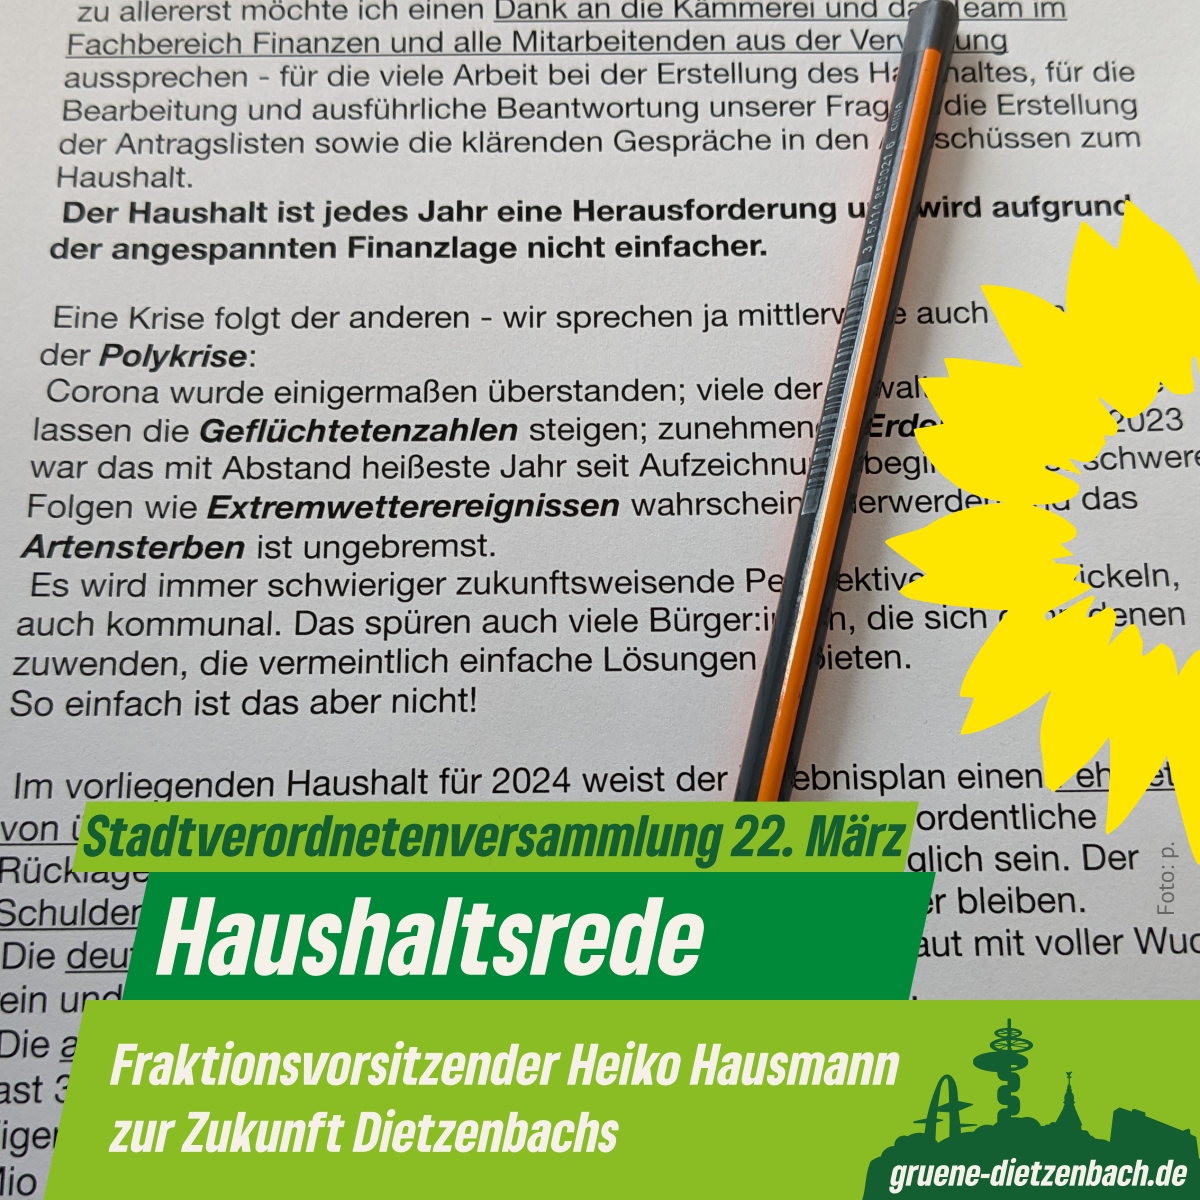 Sharepic:. Zu sehen ist das Foto eines Teils der Haushaltsrede des Grüne-Dietzenbach-Fraktionsvorsitzenden Heiko Hausmann